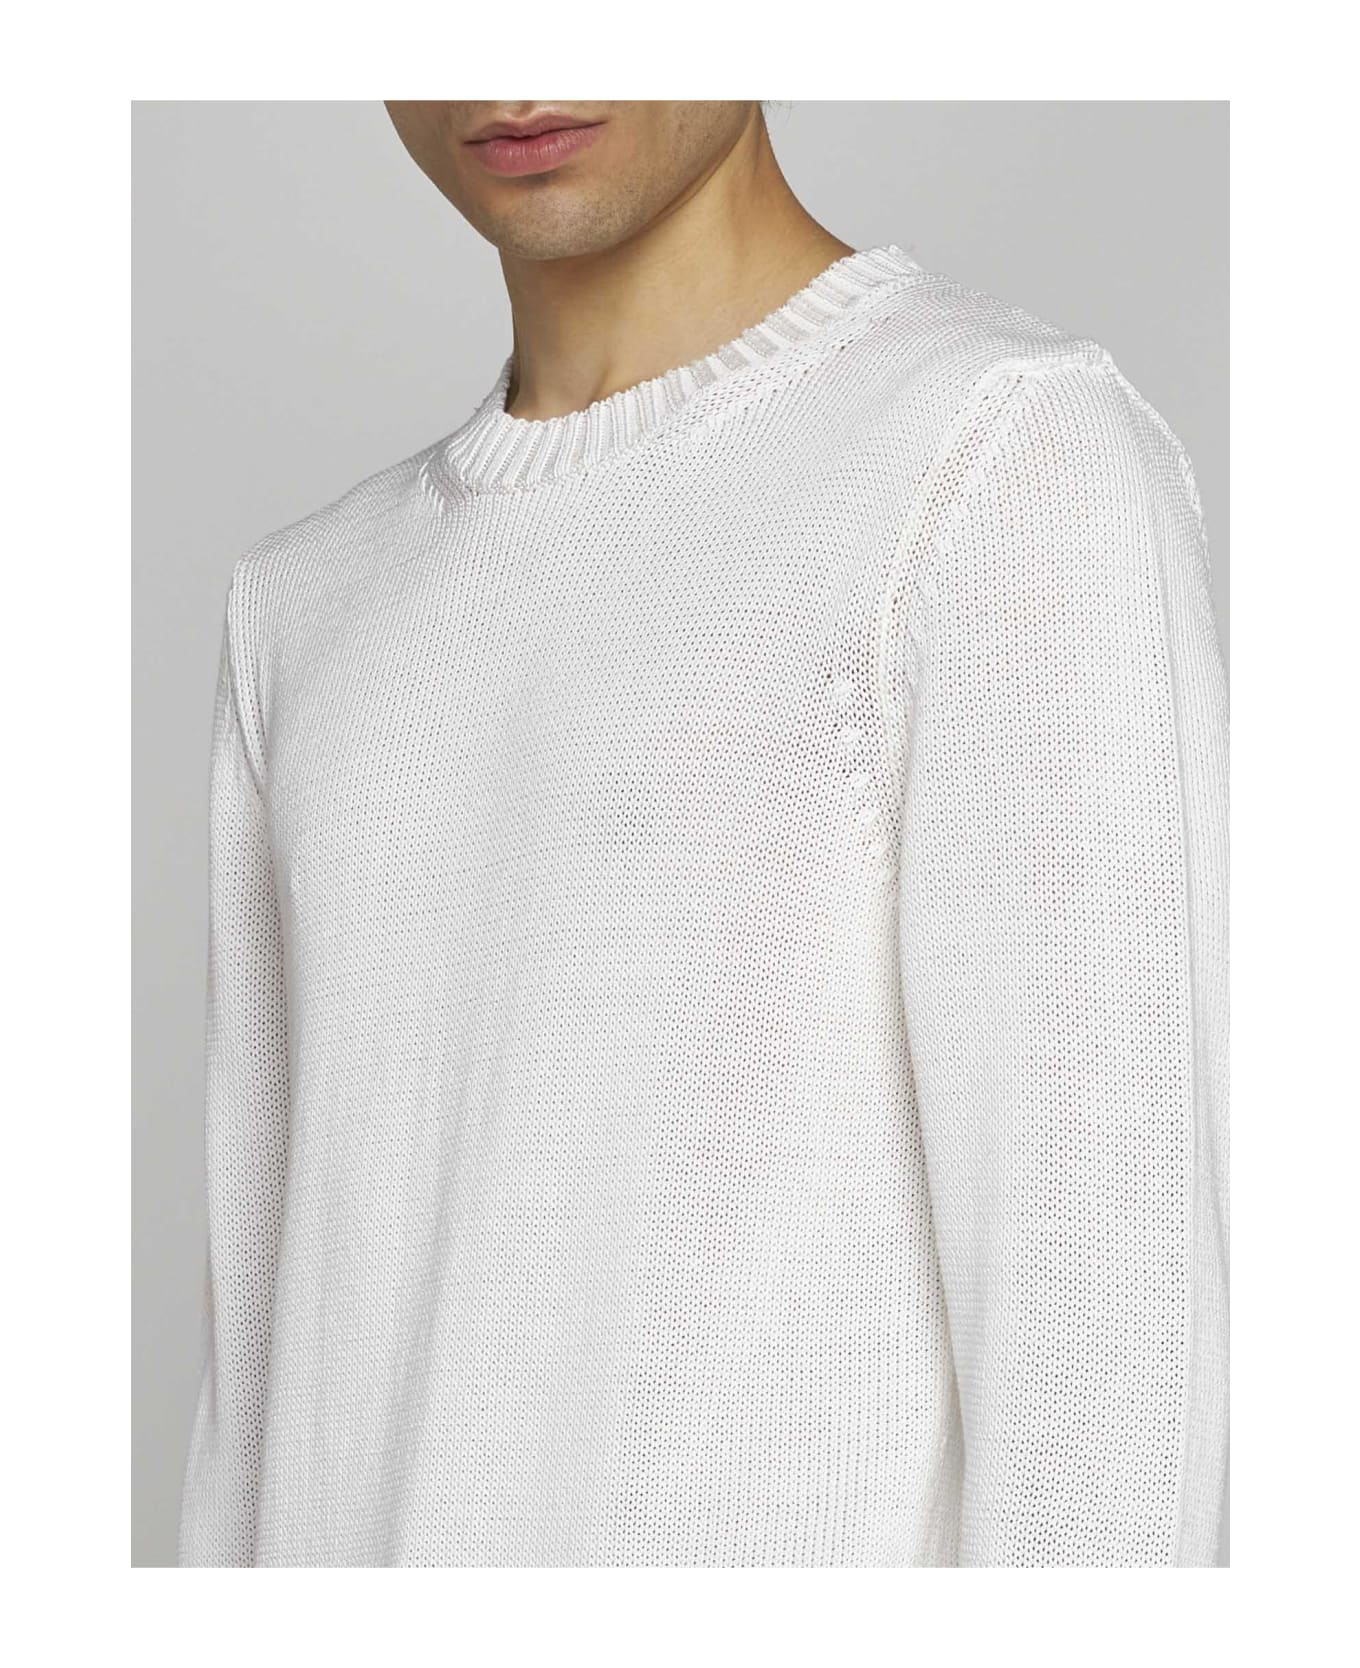 Tagliatore Cotton Sweater - Bianco